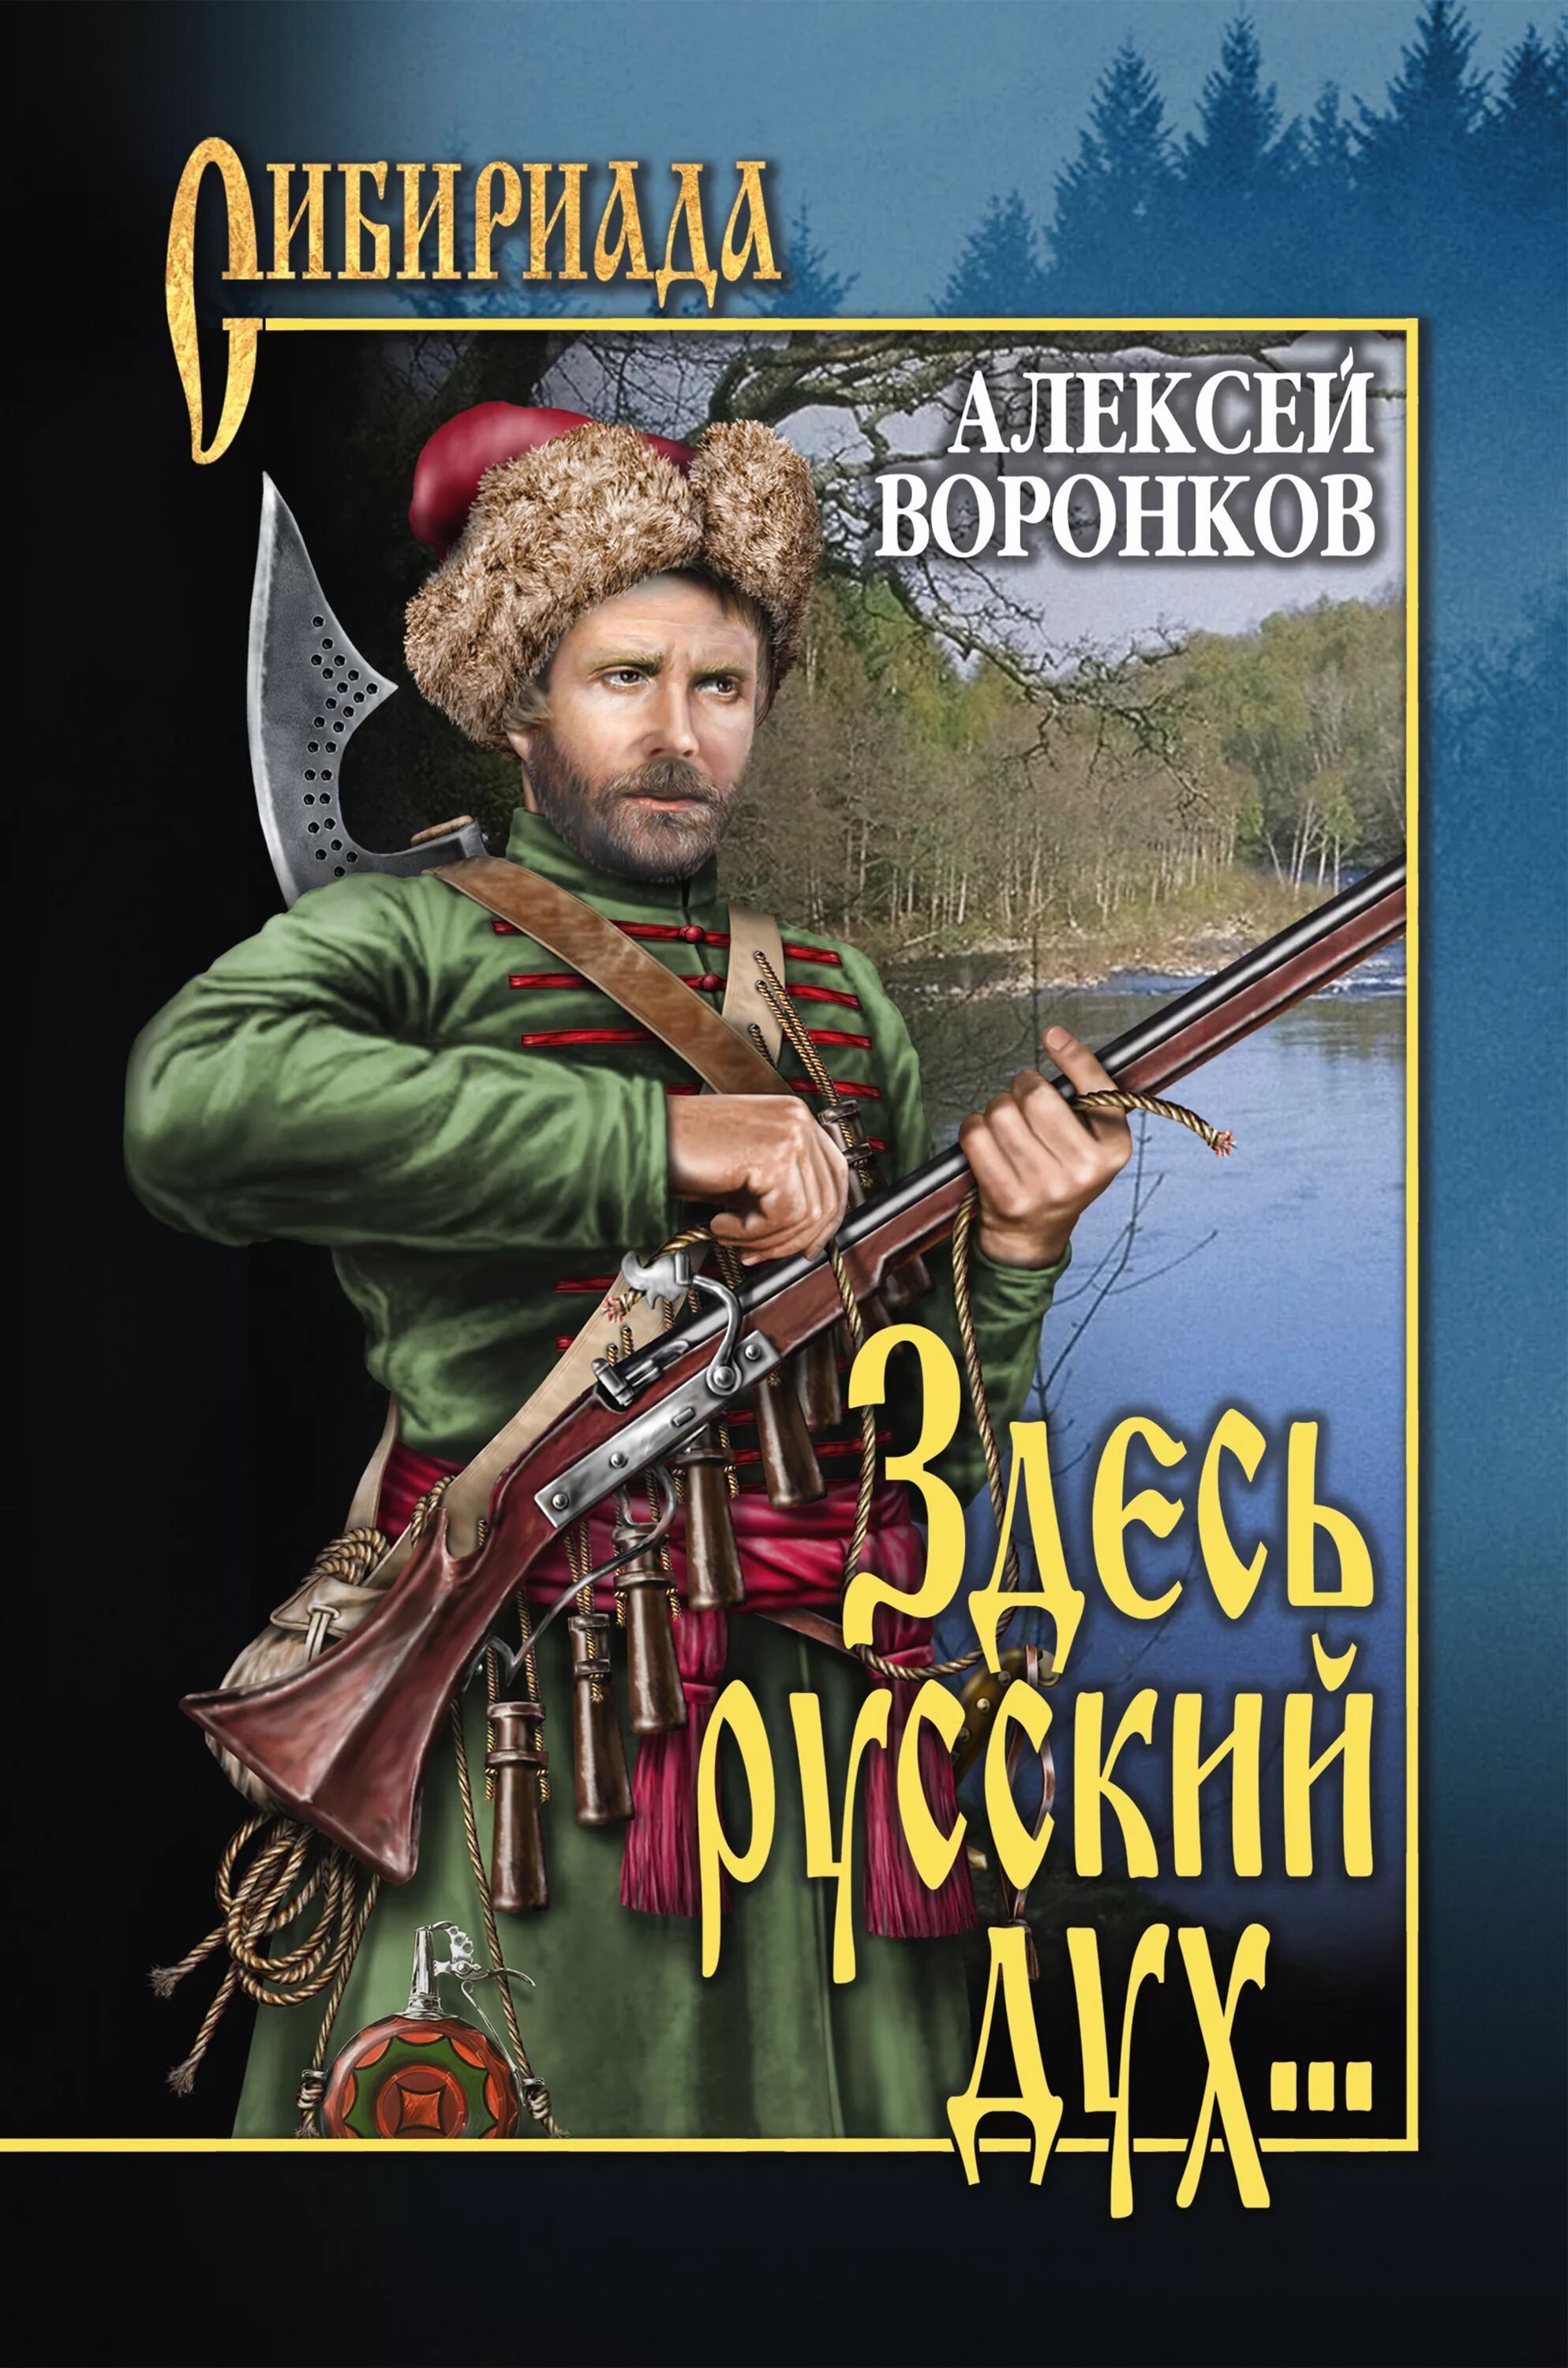 Русские исторические приключения. Художественные исторические книги. Здесь русский дух книга.